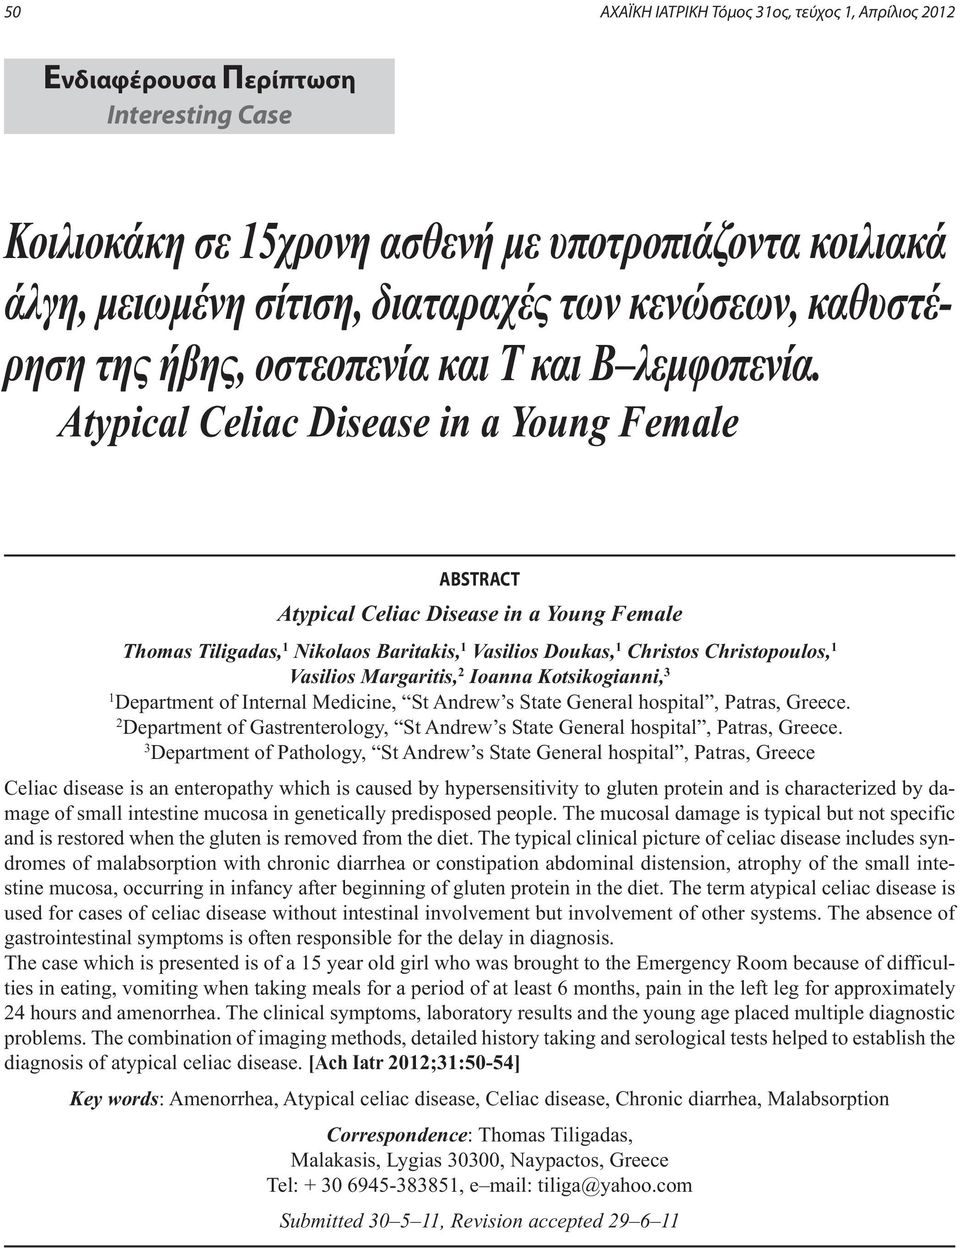 Atypical Celiac Disease in a Young Female ABSTRACT Atypical Celiac Disease in a Young Female Thomas Tiligadas, 1 Nikolaos Baritakis, 1 Vasilios Doukas, 1 Christos Christopoulos, 1 Vasilios